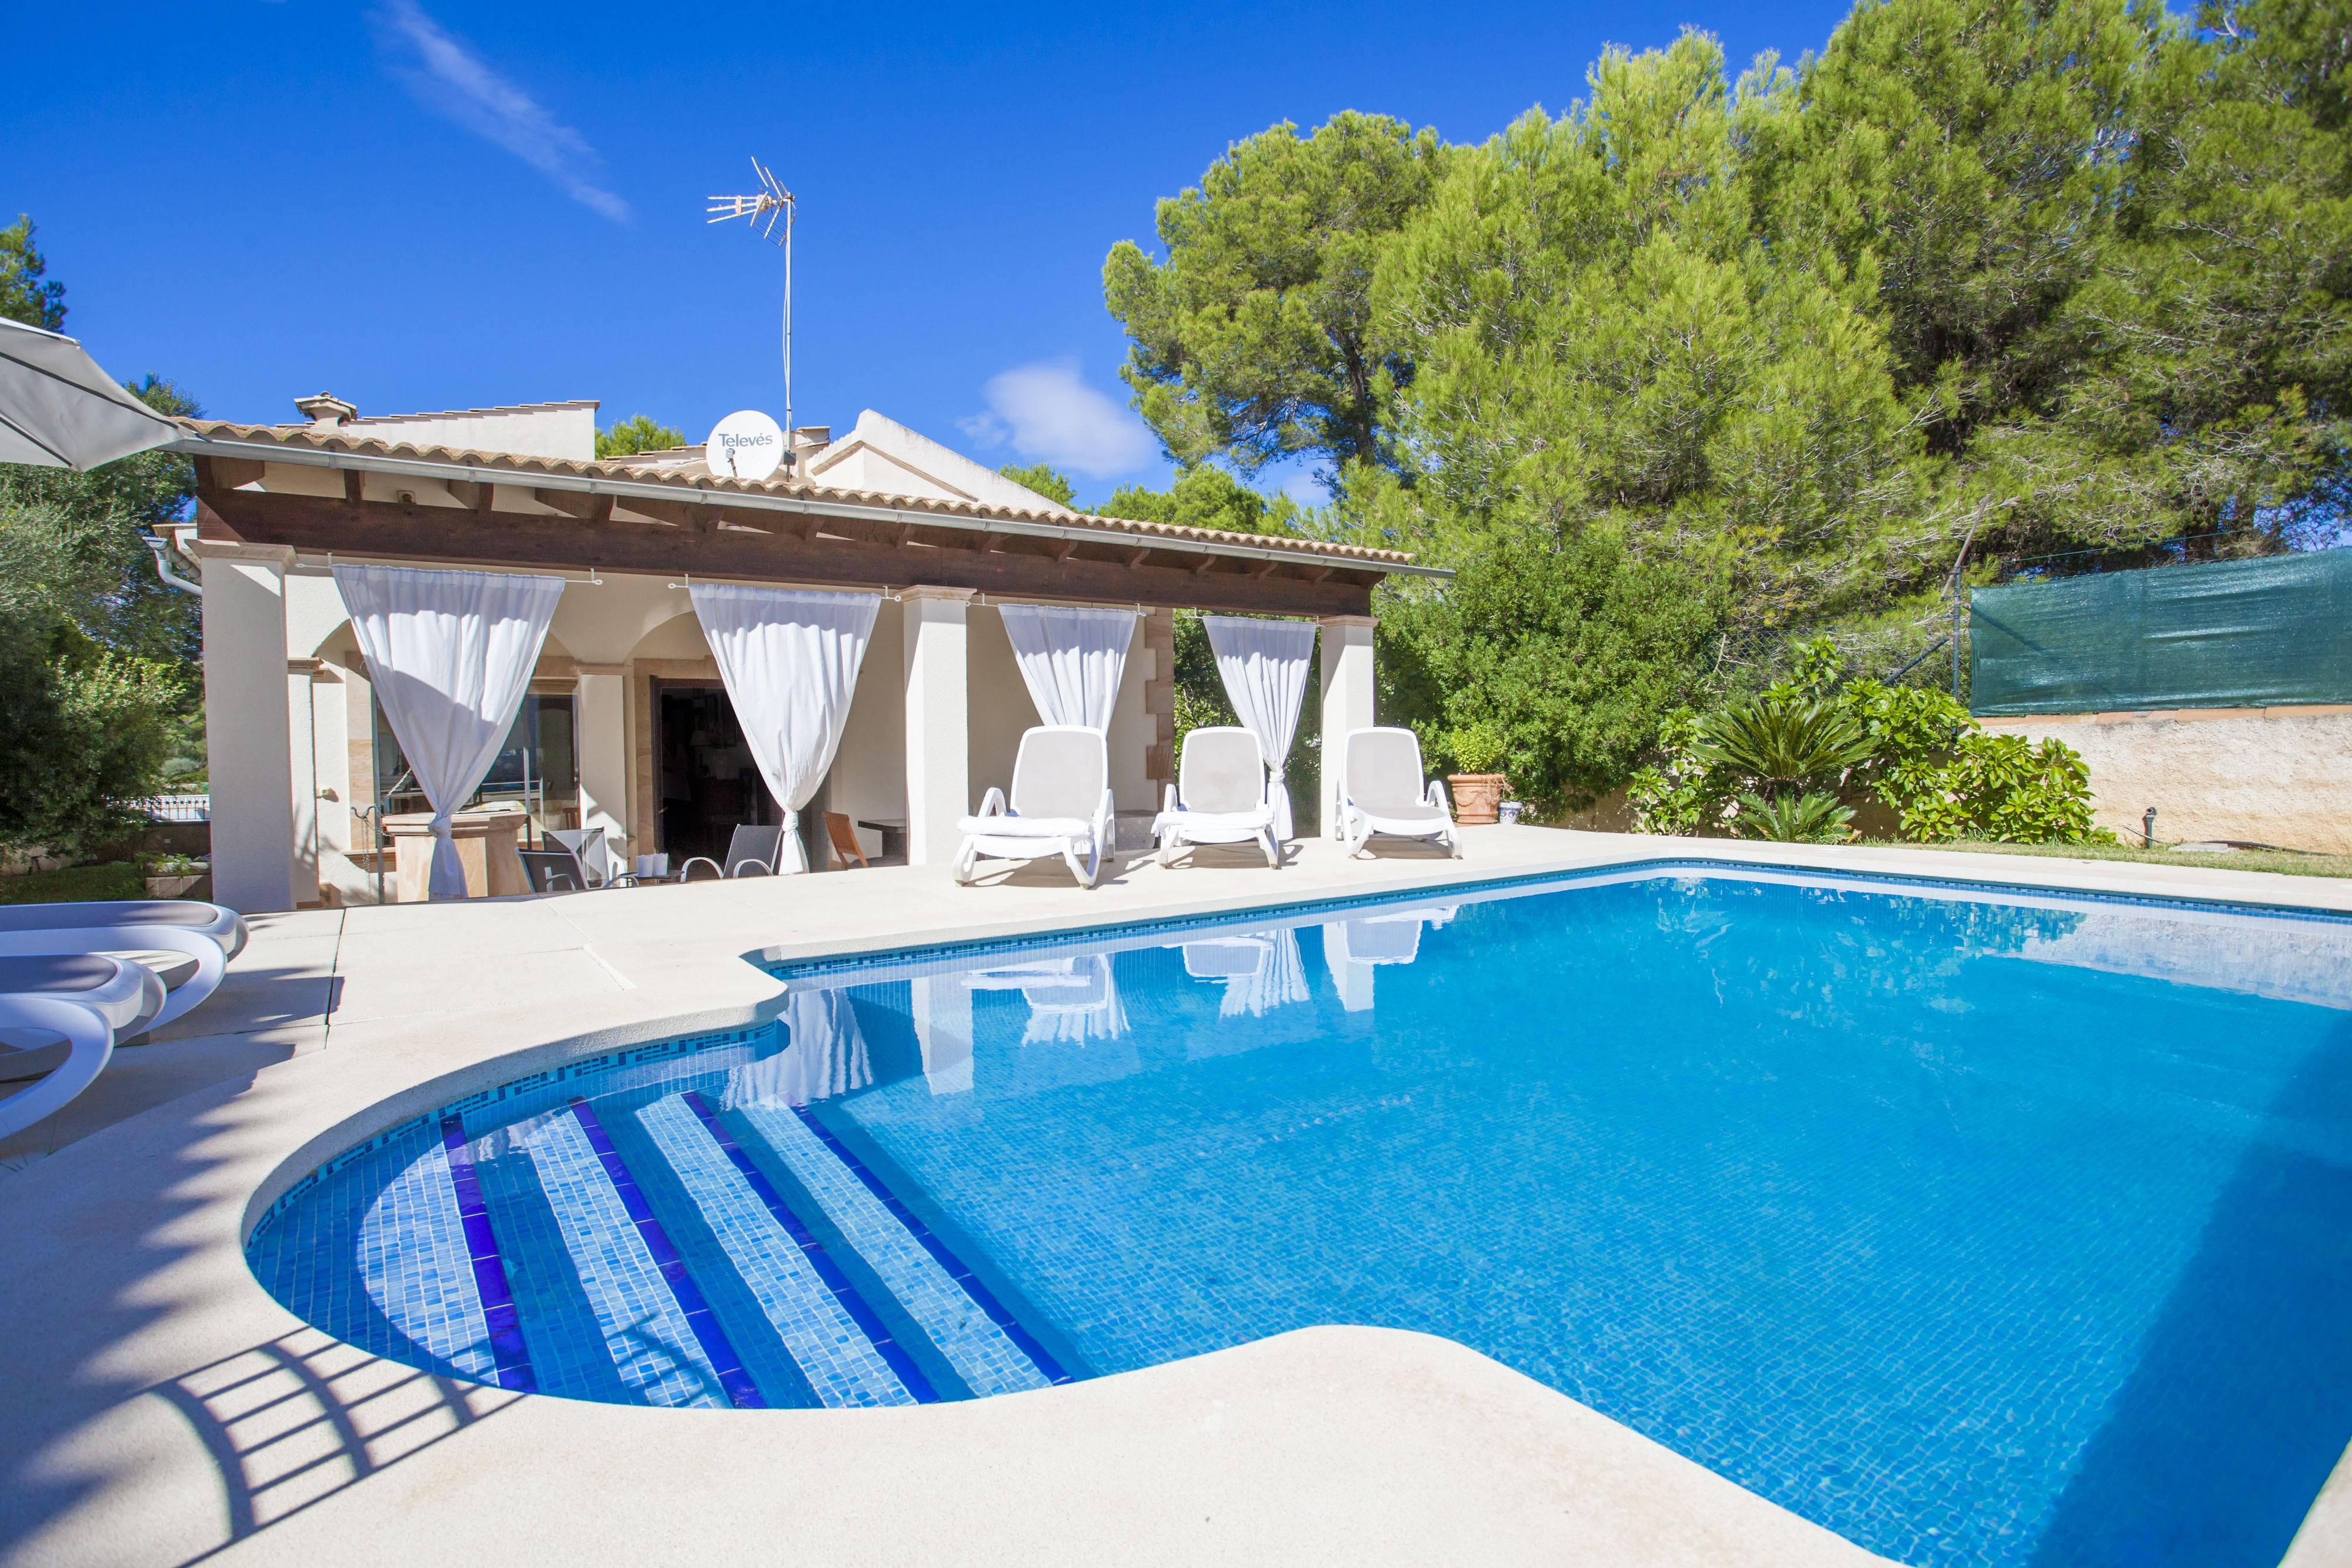 Property Image 2 - CA NA MATAS - Villa with private pool in Son Serra de Marina. Free WiFi